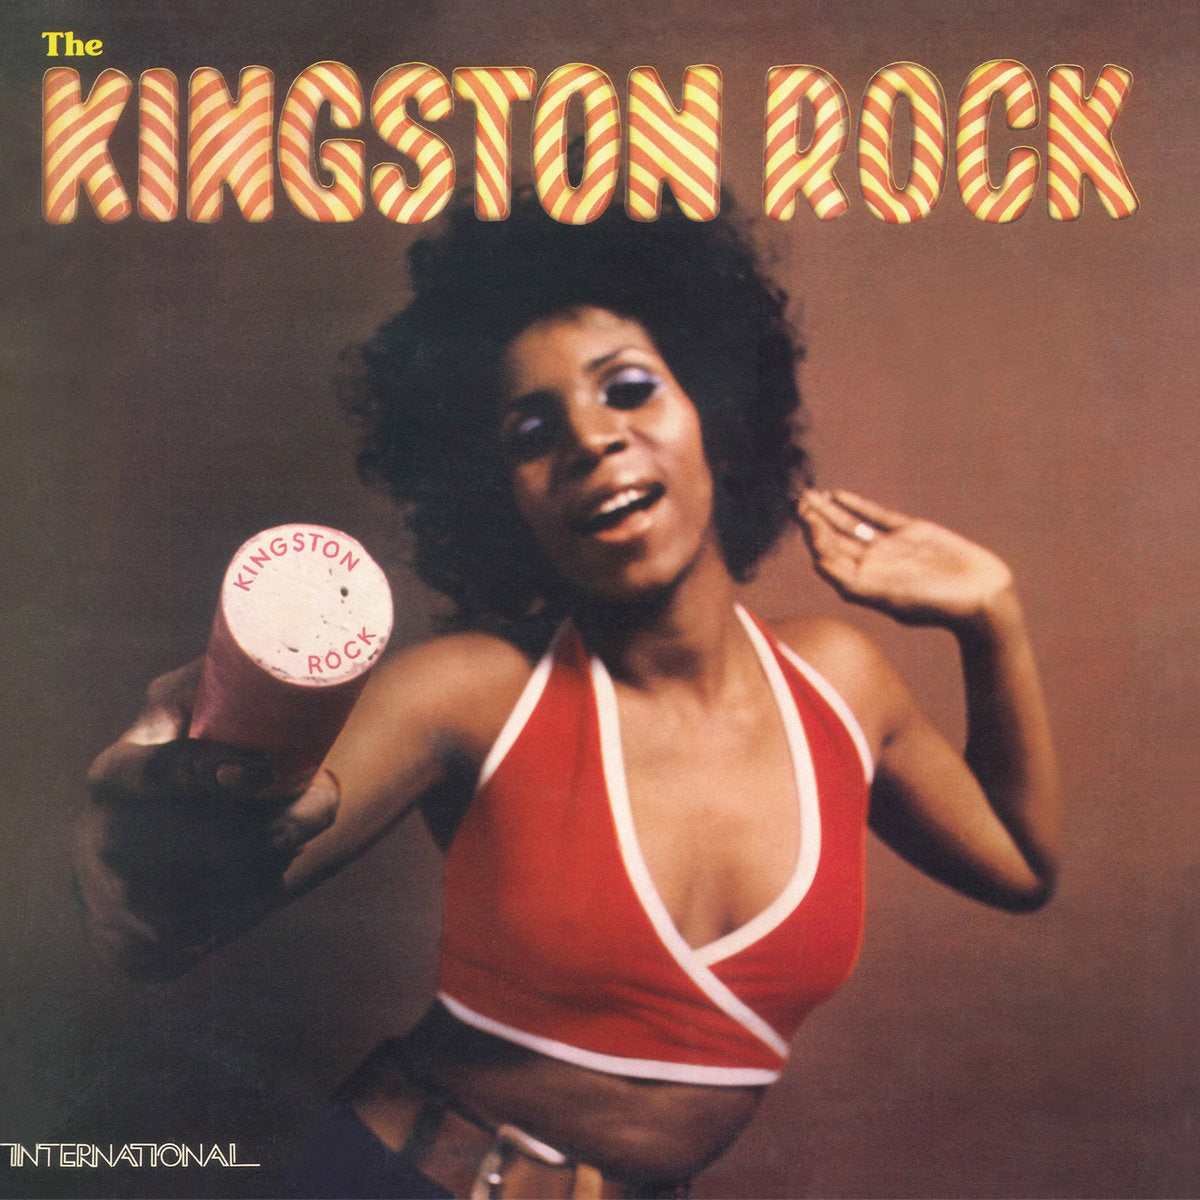 Winston Jarrett / Horace Andy - The Kingston Rock (Earth Must Be Hell)